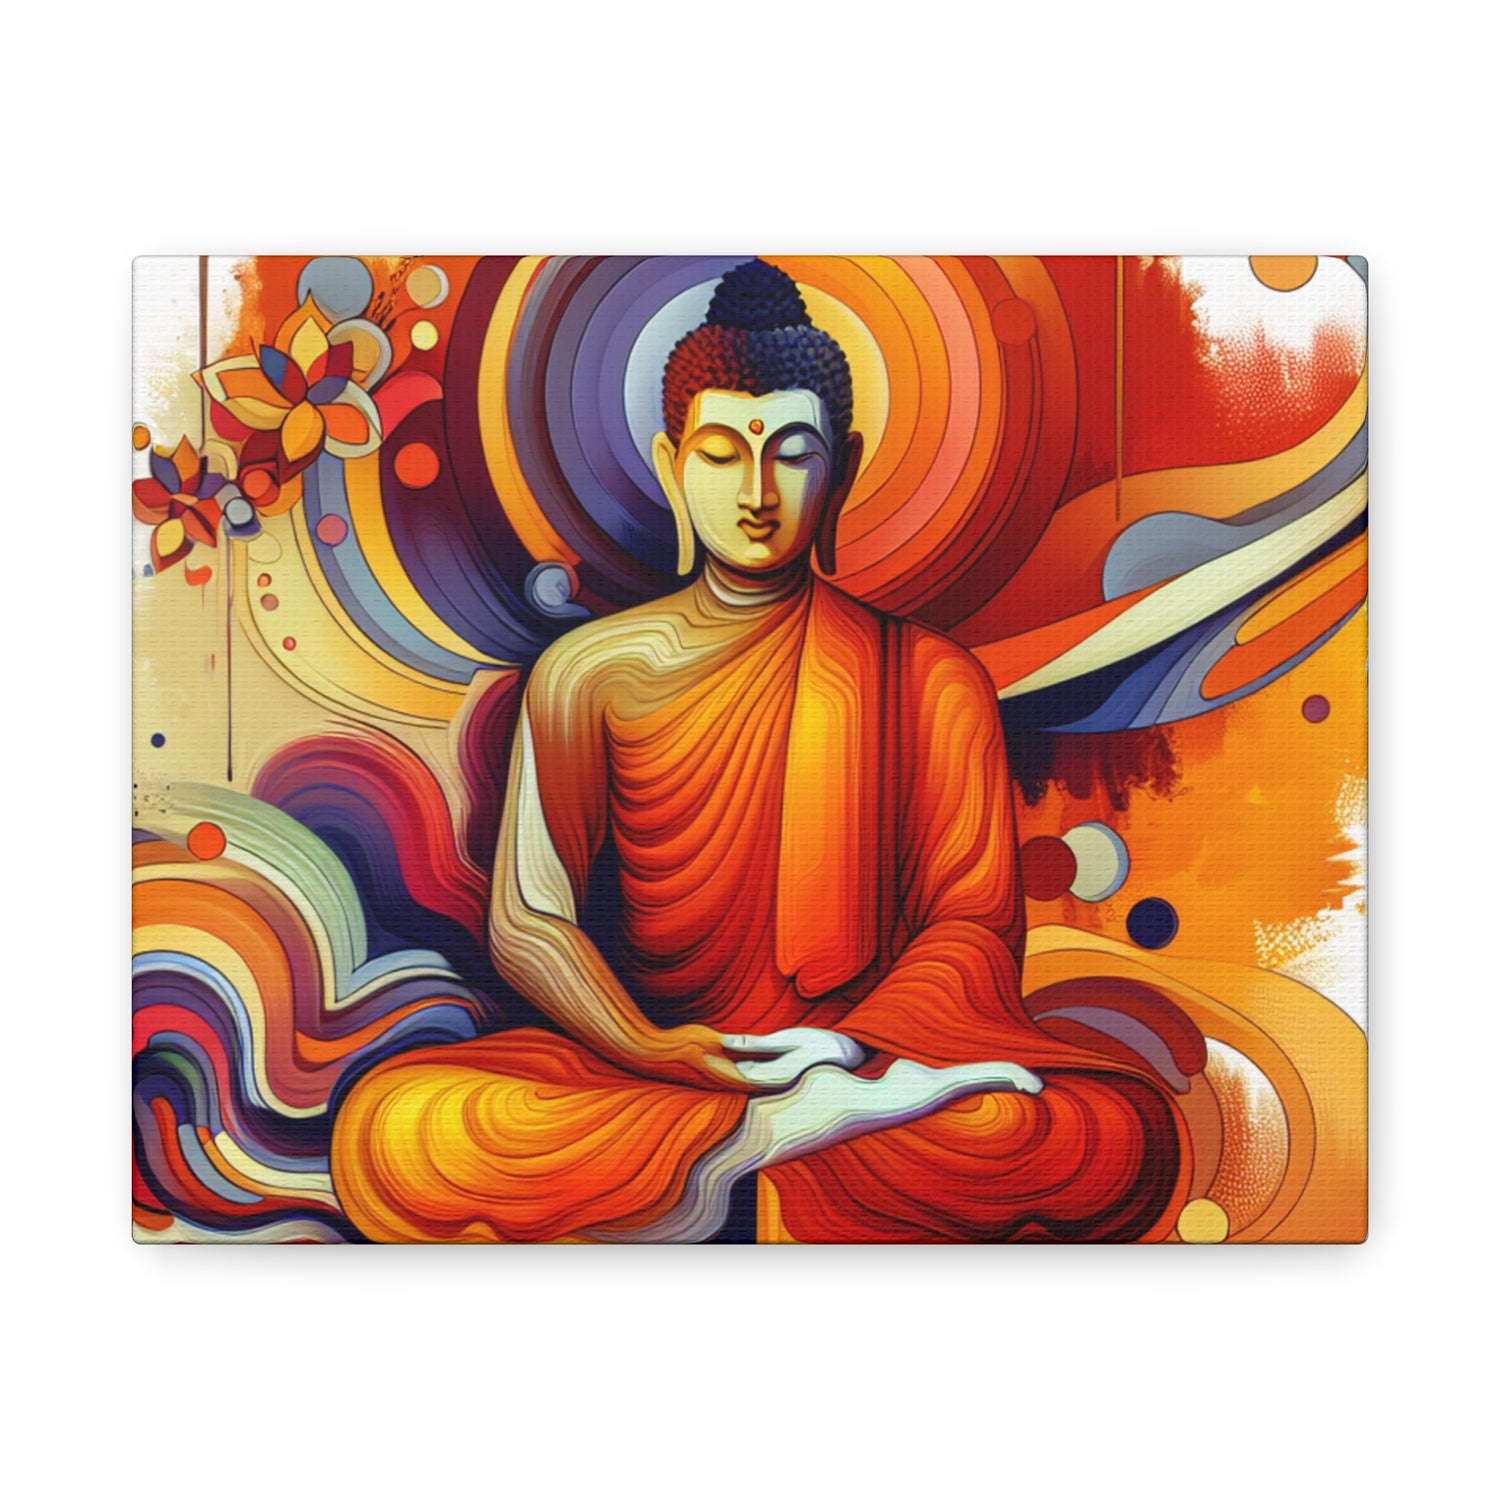 Buddha Digital Art